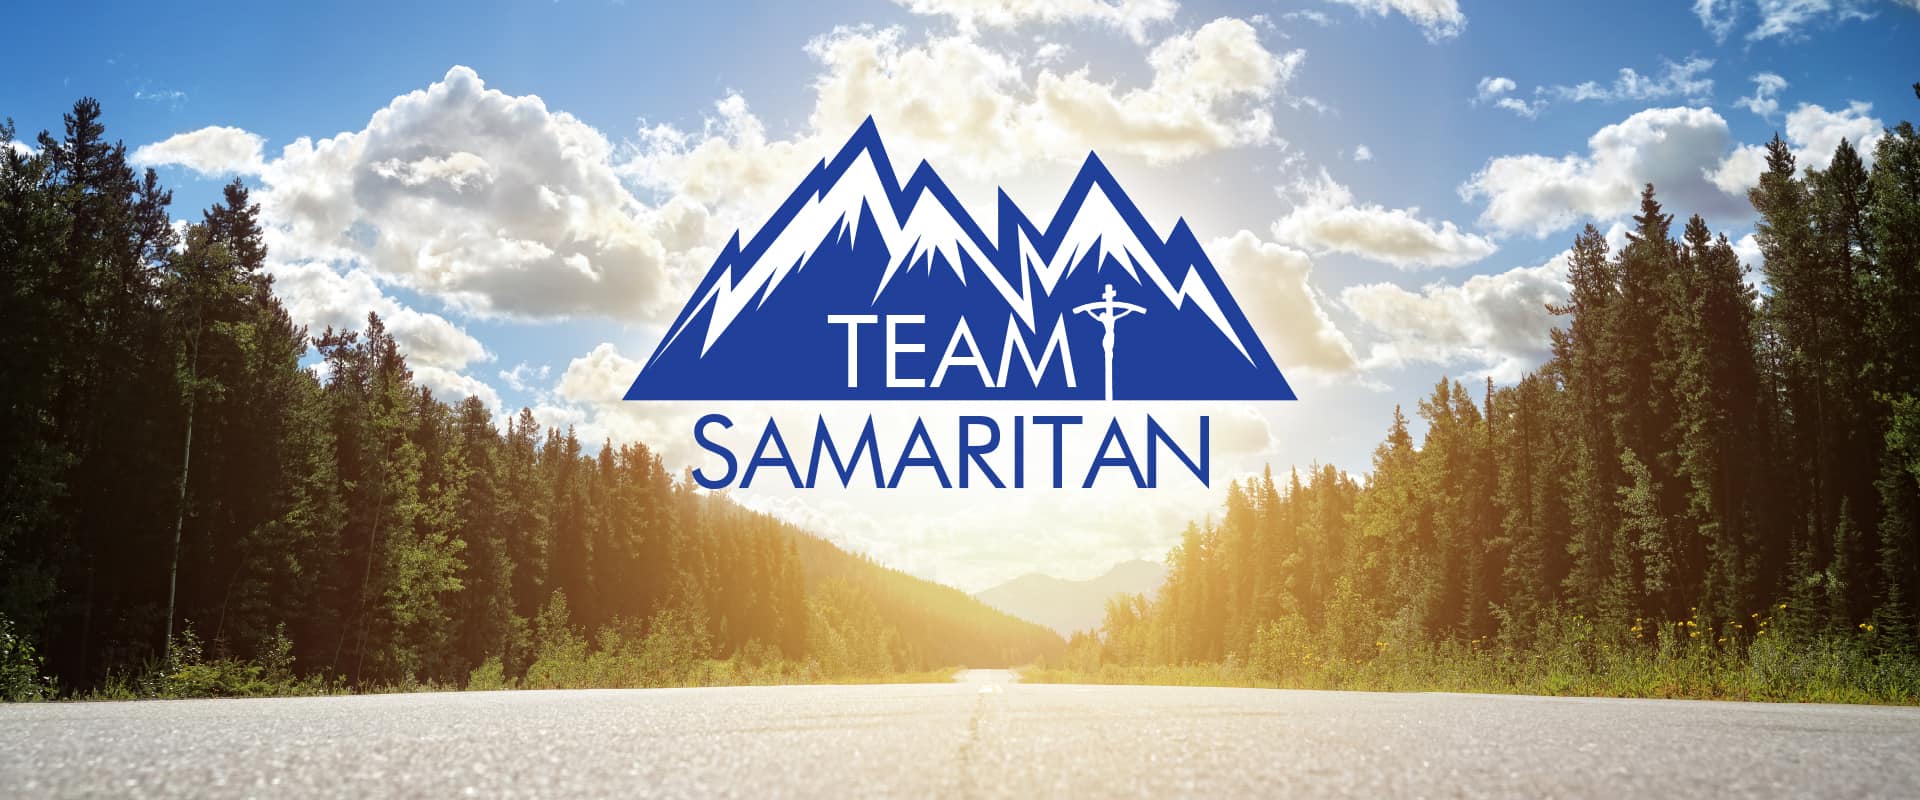 Team Samaritan